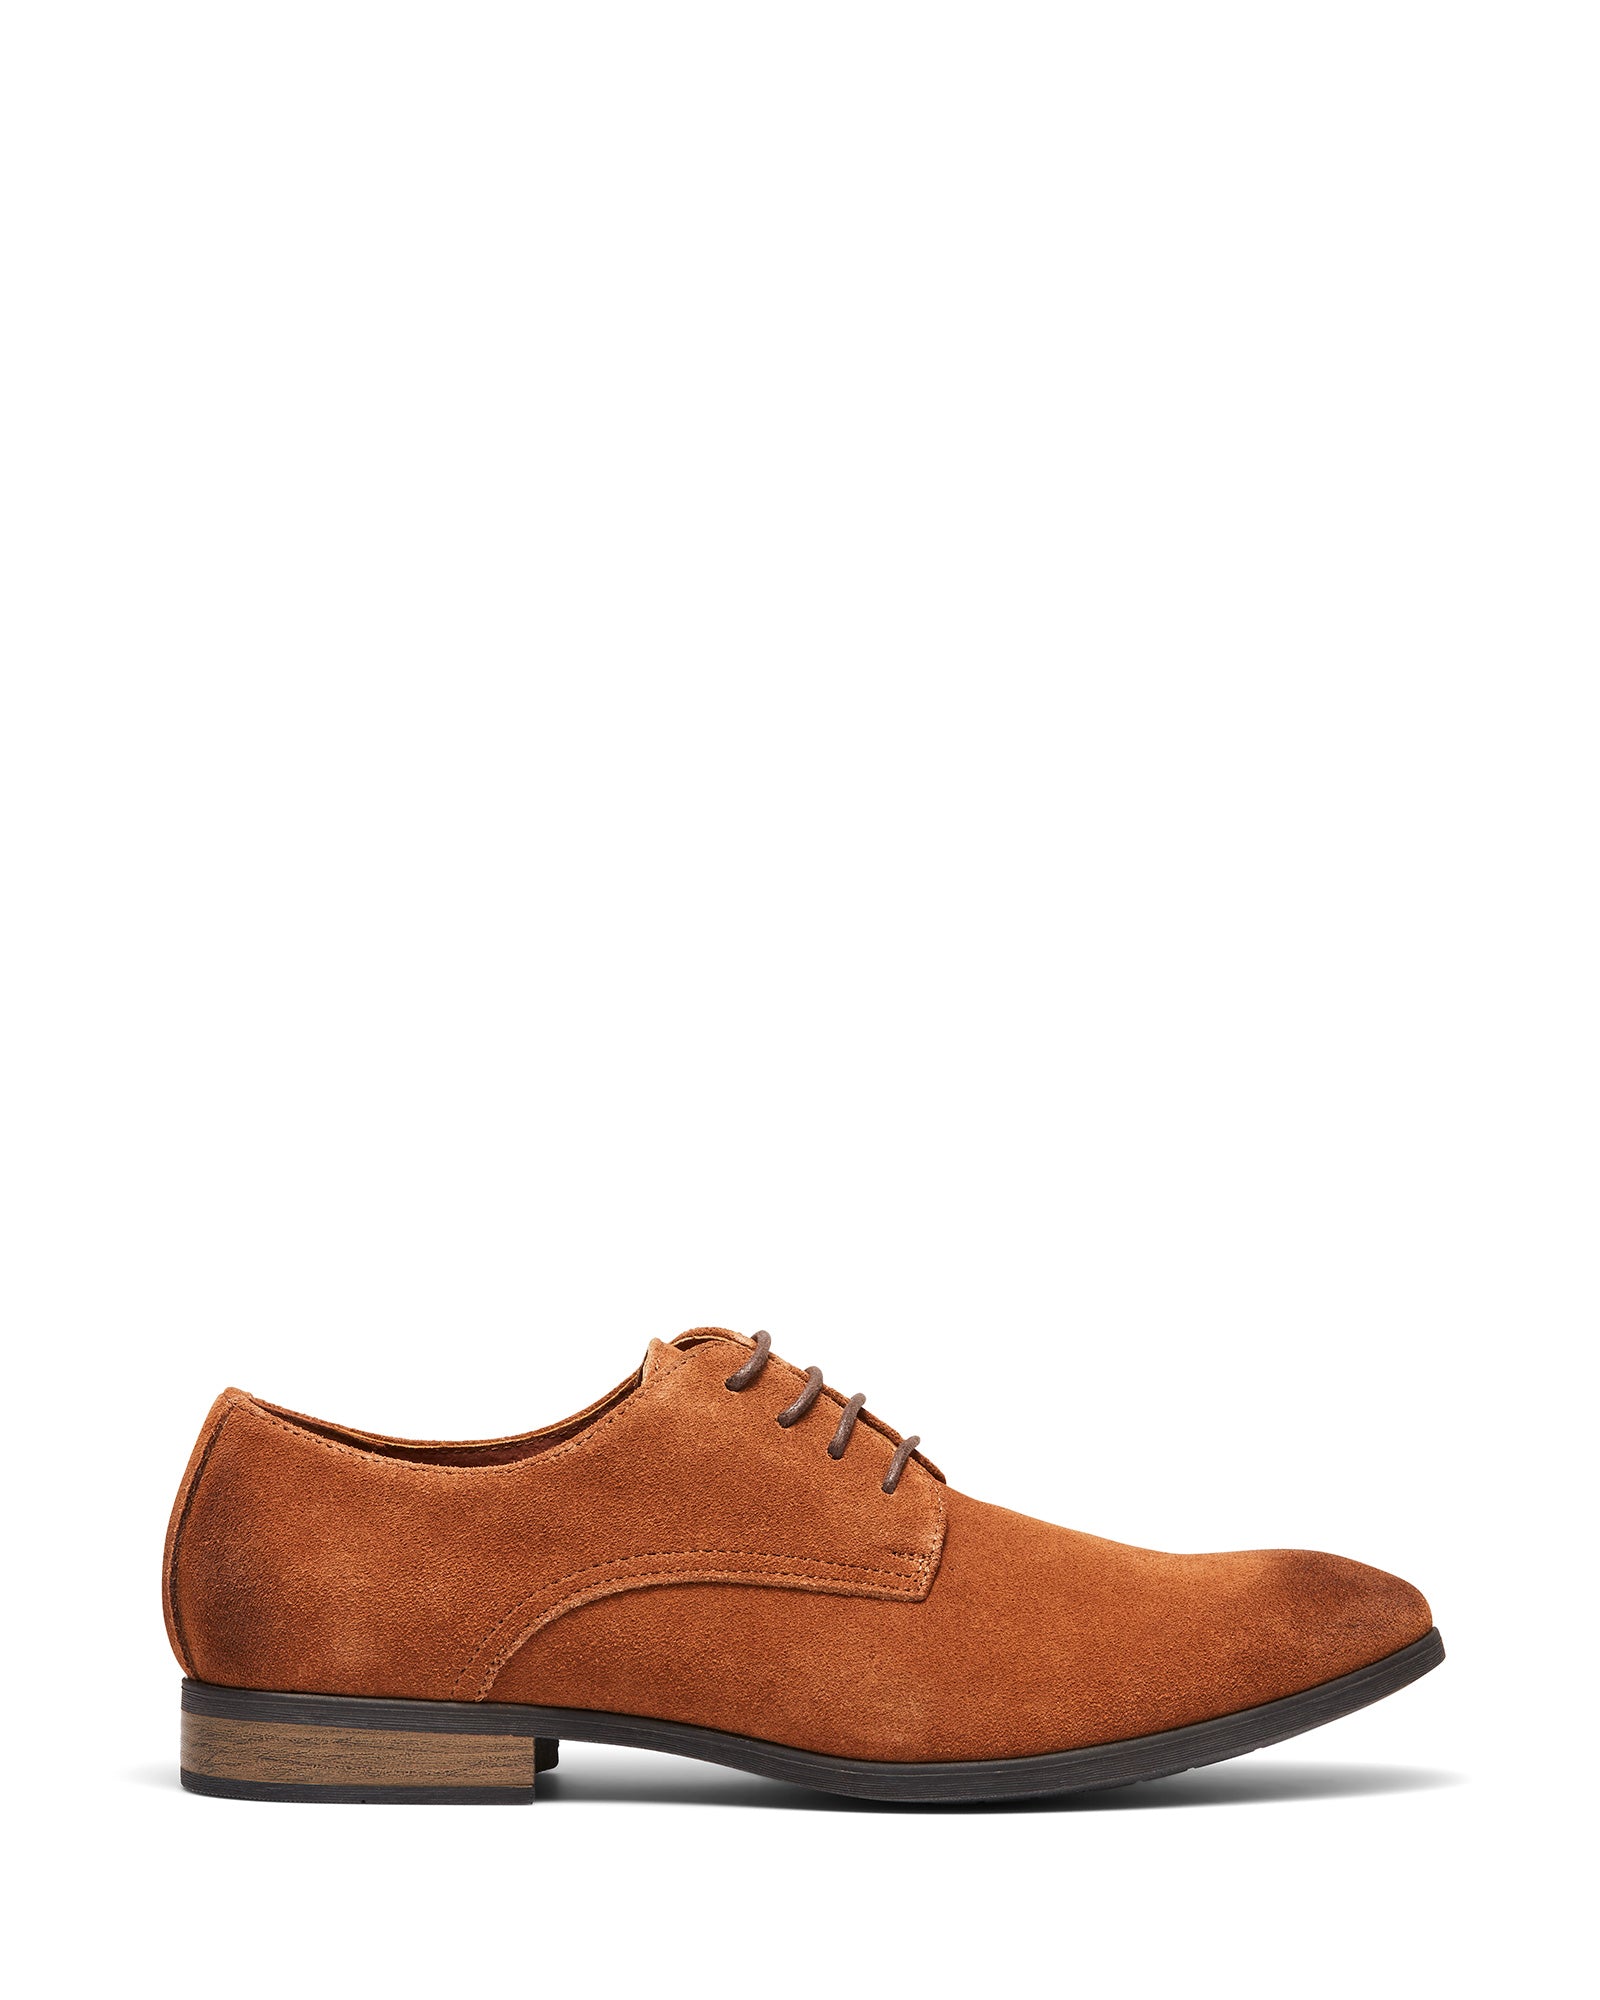 Uncut Shoes Tremblant Tan | Men's Leather Dress Shoe | Derby | Lace Up 